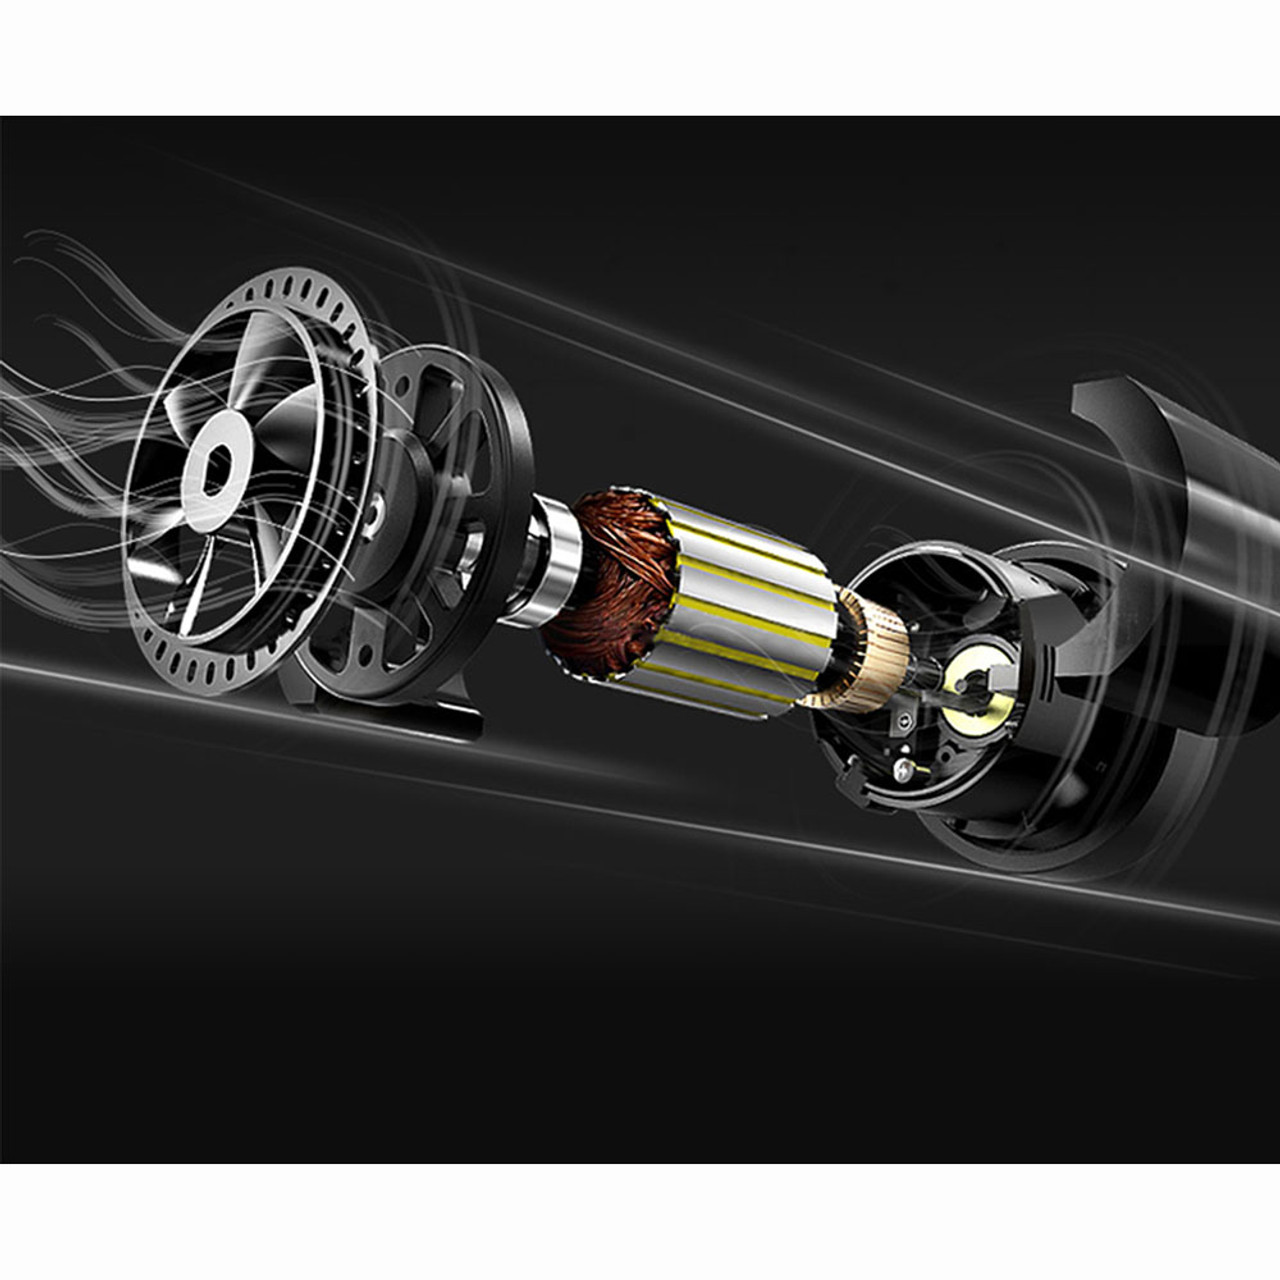 iMounTEK® 12V Tire Inflator Pump with LCD Display product image